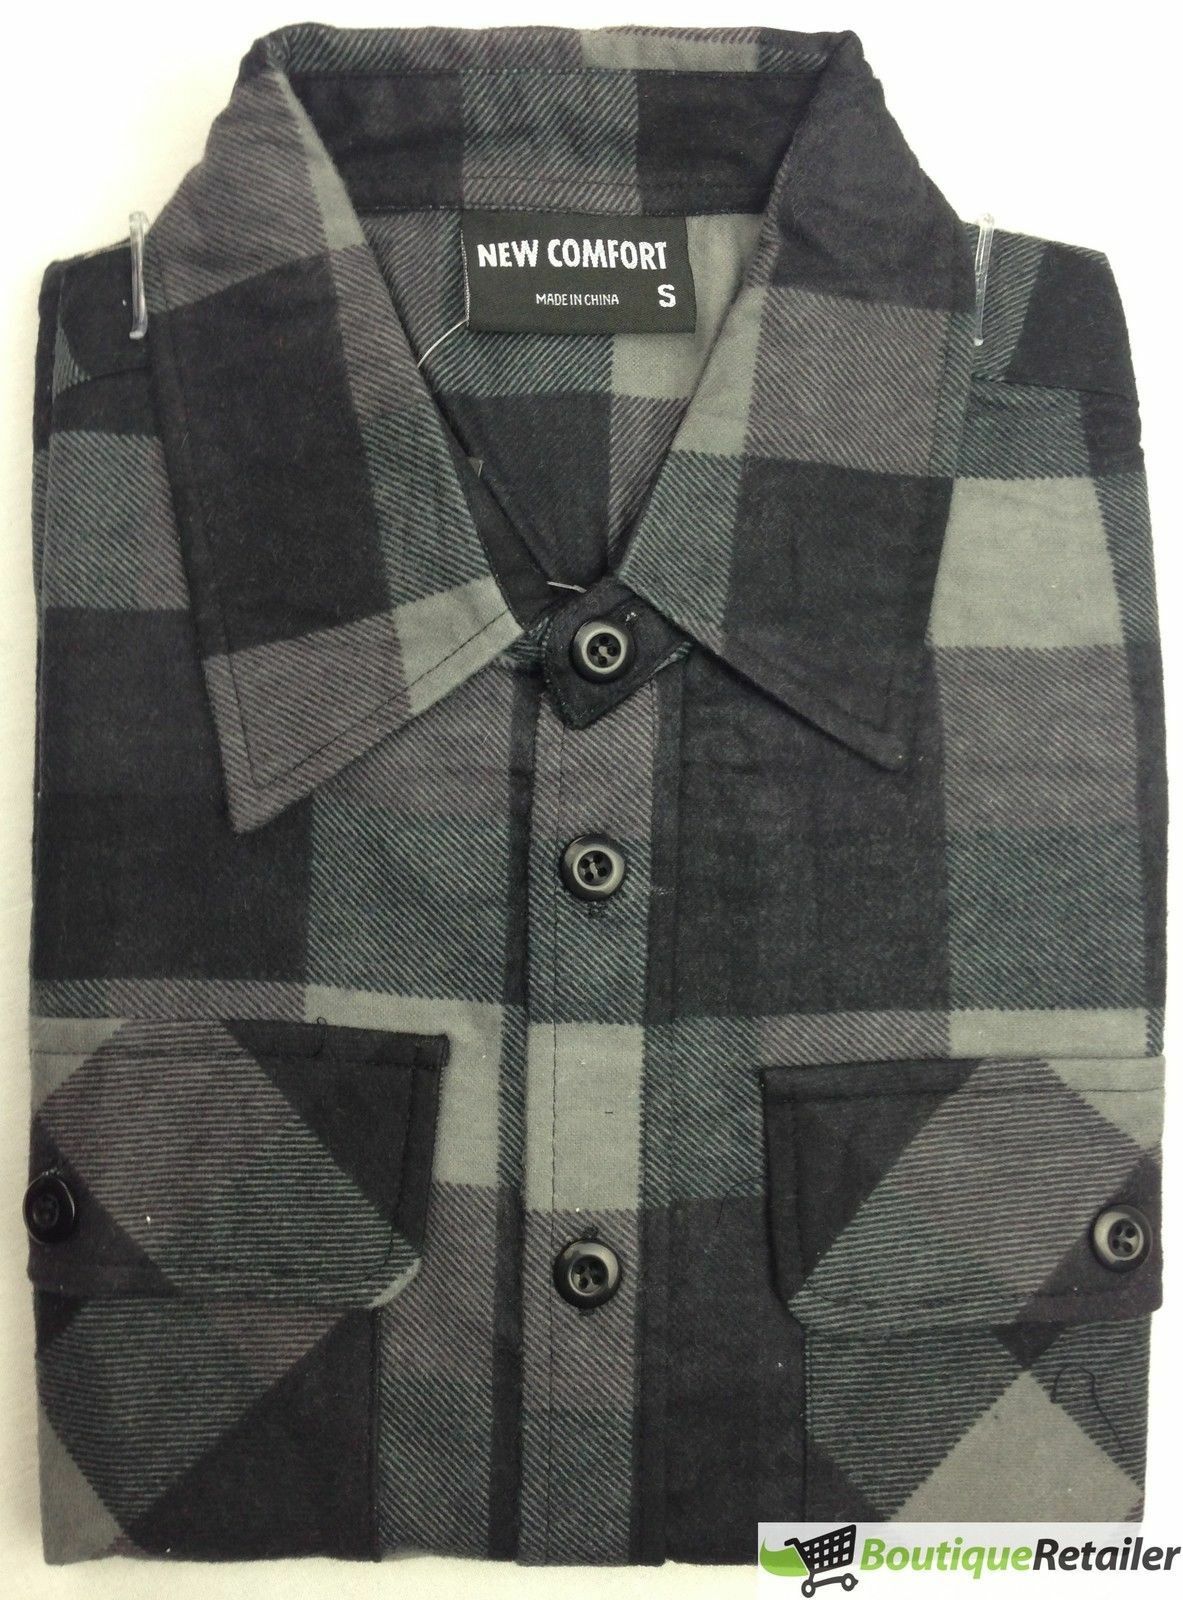 FLANNELETTE SHIRT 100% COTTON Mens Flannel Vintage Long Sleeve Classic ...